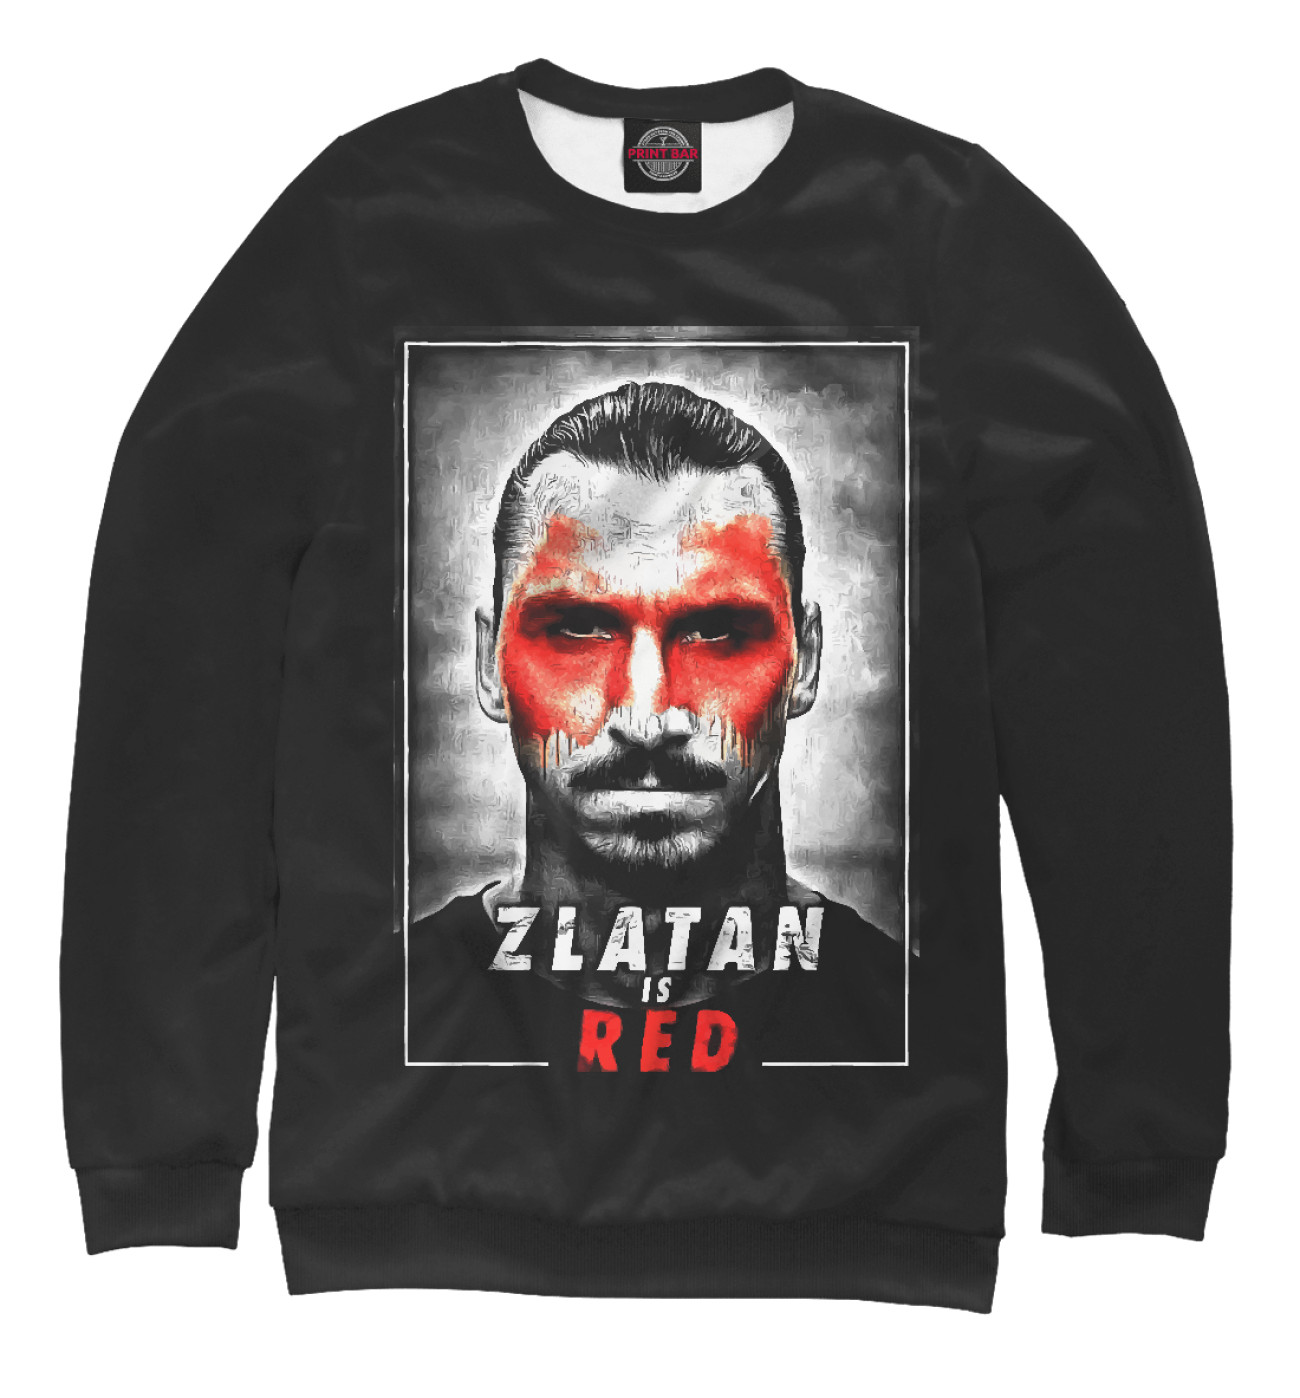 Женский Свитшот Zlatan is Red, артикул: MAN-840663-swi-1